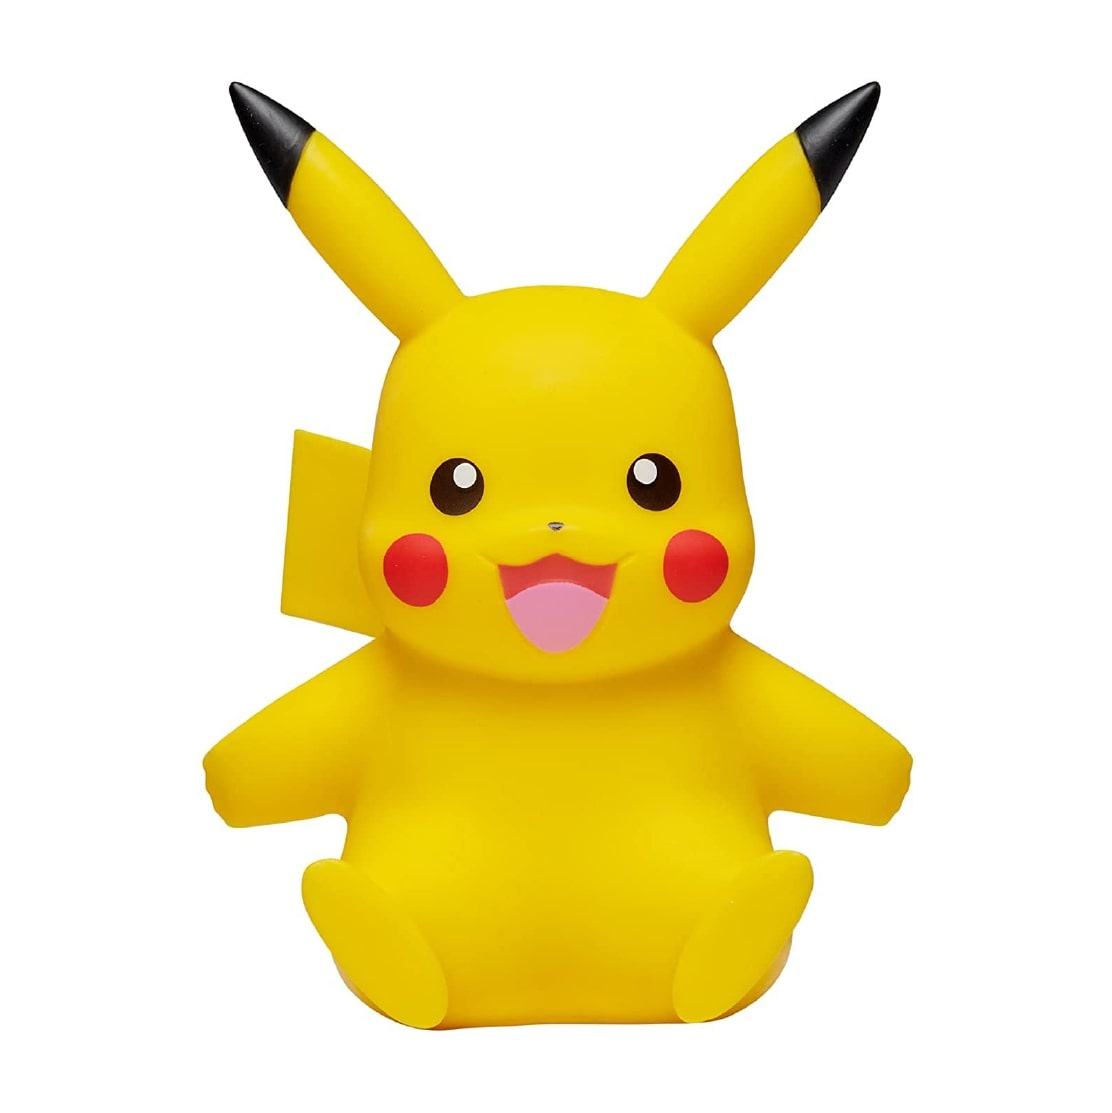 Comprar Pokemon figura vinil 10 cm Pikachu de Bizak